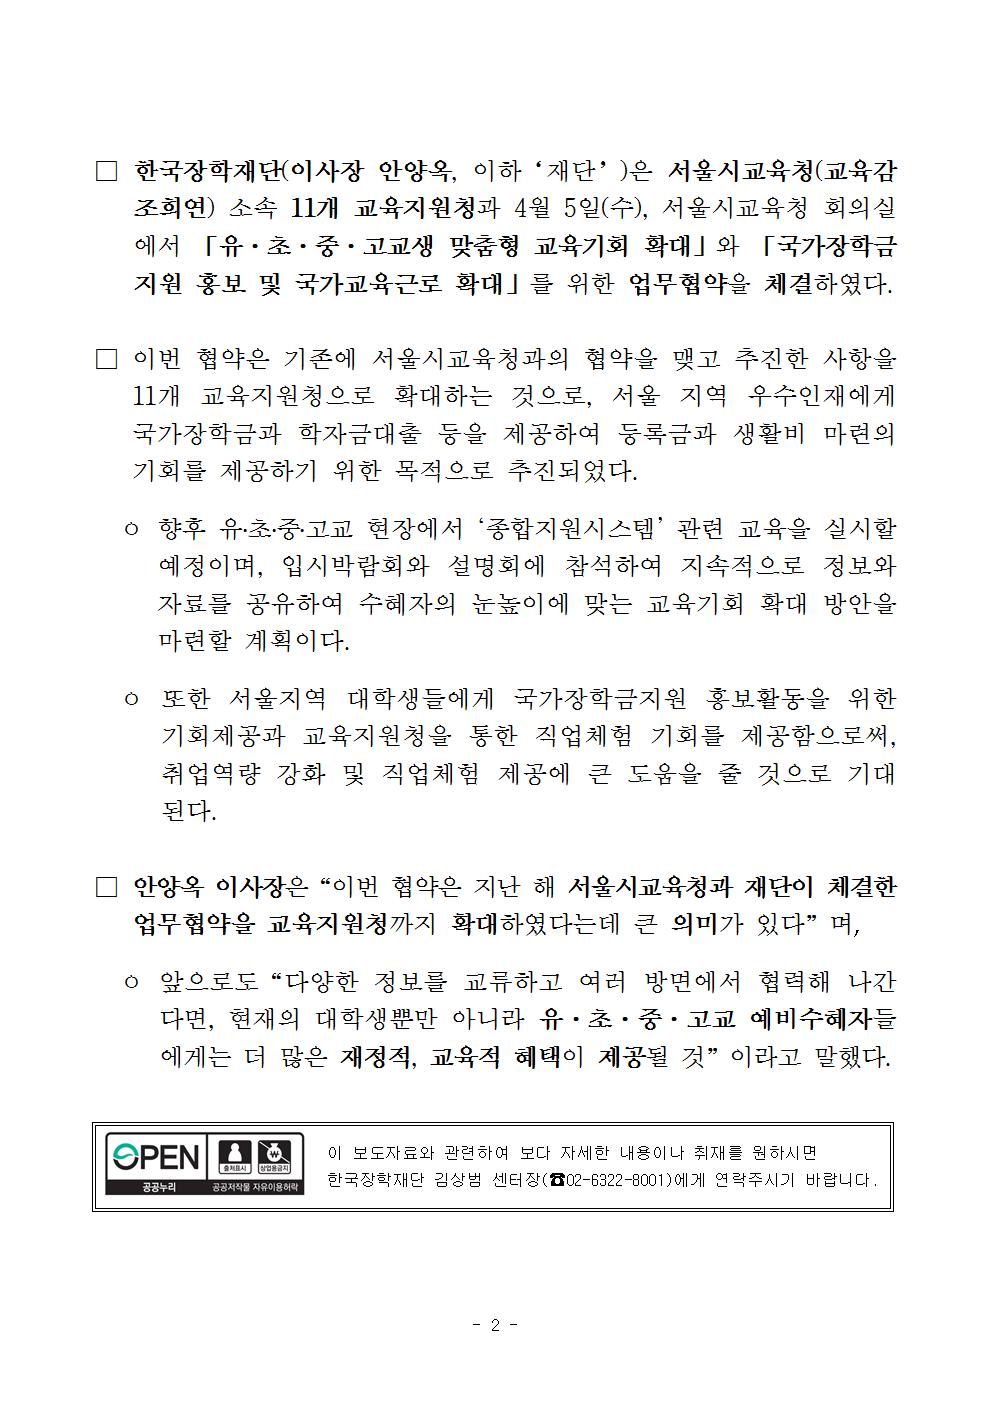 04-05(수)[보도자료] 한국장학재단-서울교육지원청 업무협약 체결002.jpg